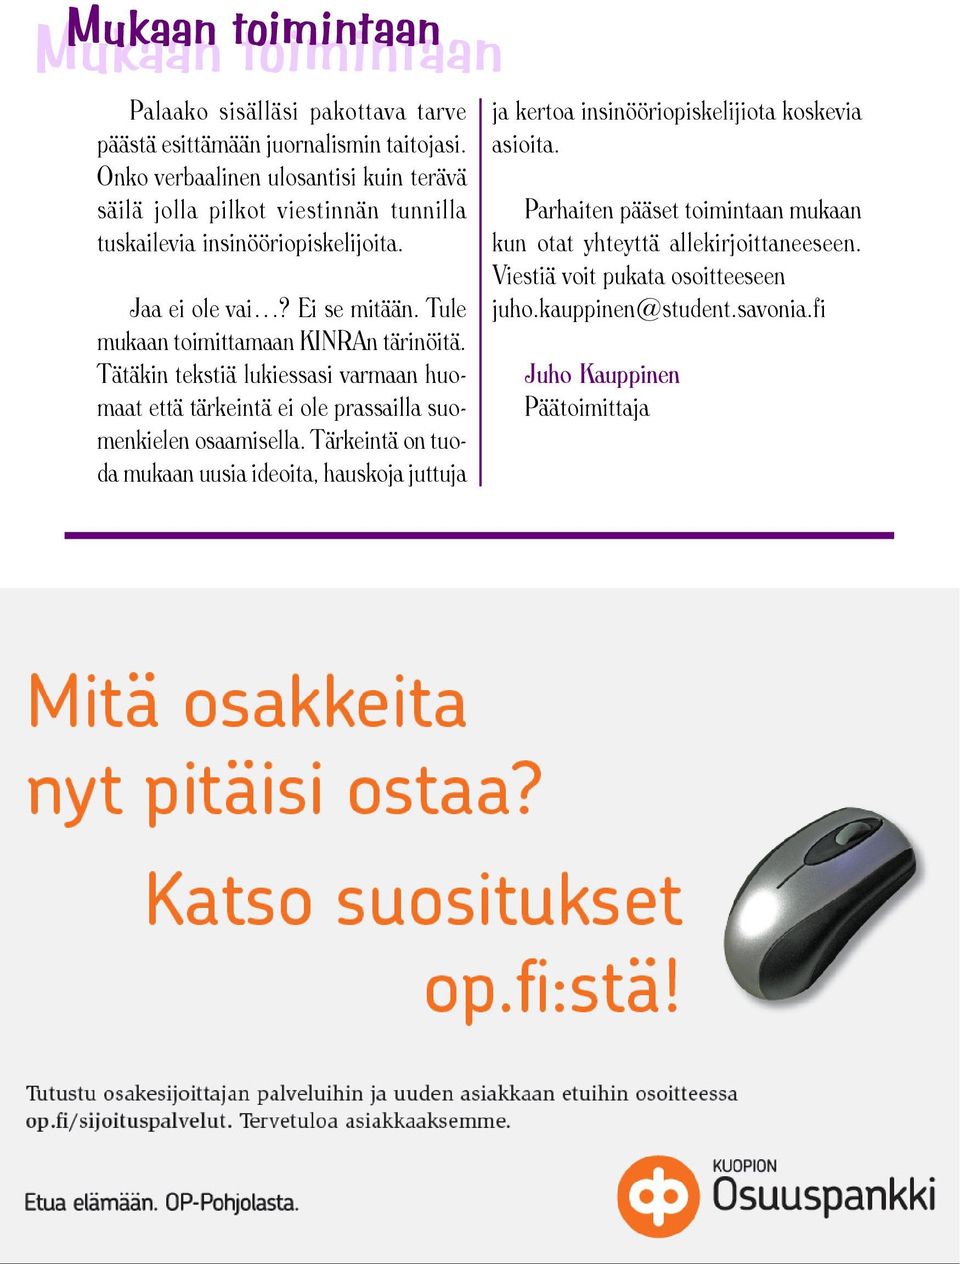 Tule mukaan toimittamaan KINRAn tärinöitä. Tätäkin tekstiä lukiessasi varmaan huomaat että tärkeintä ei ole prassailla suomenkielen osaamisella.